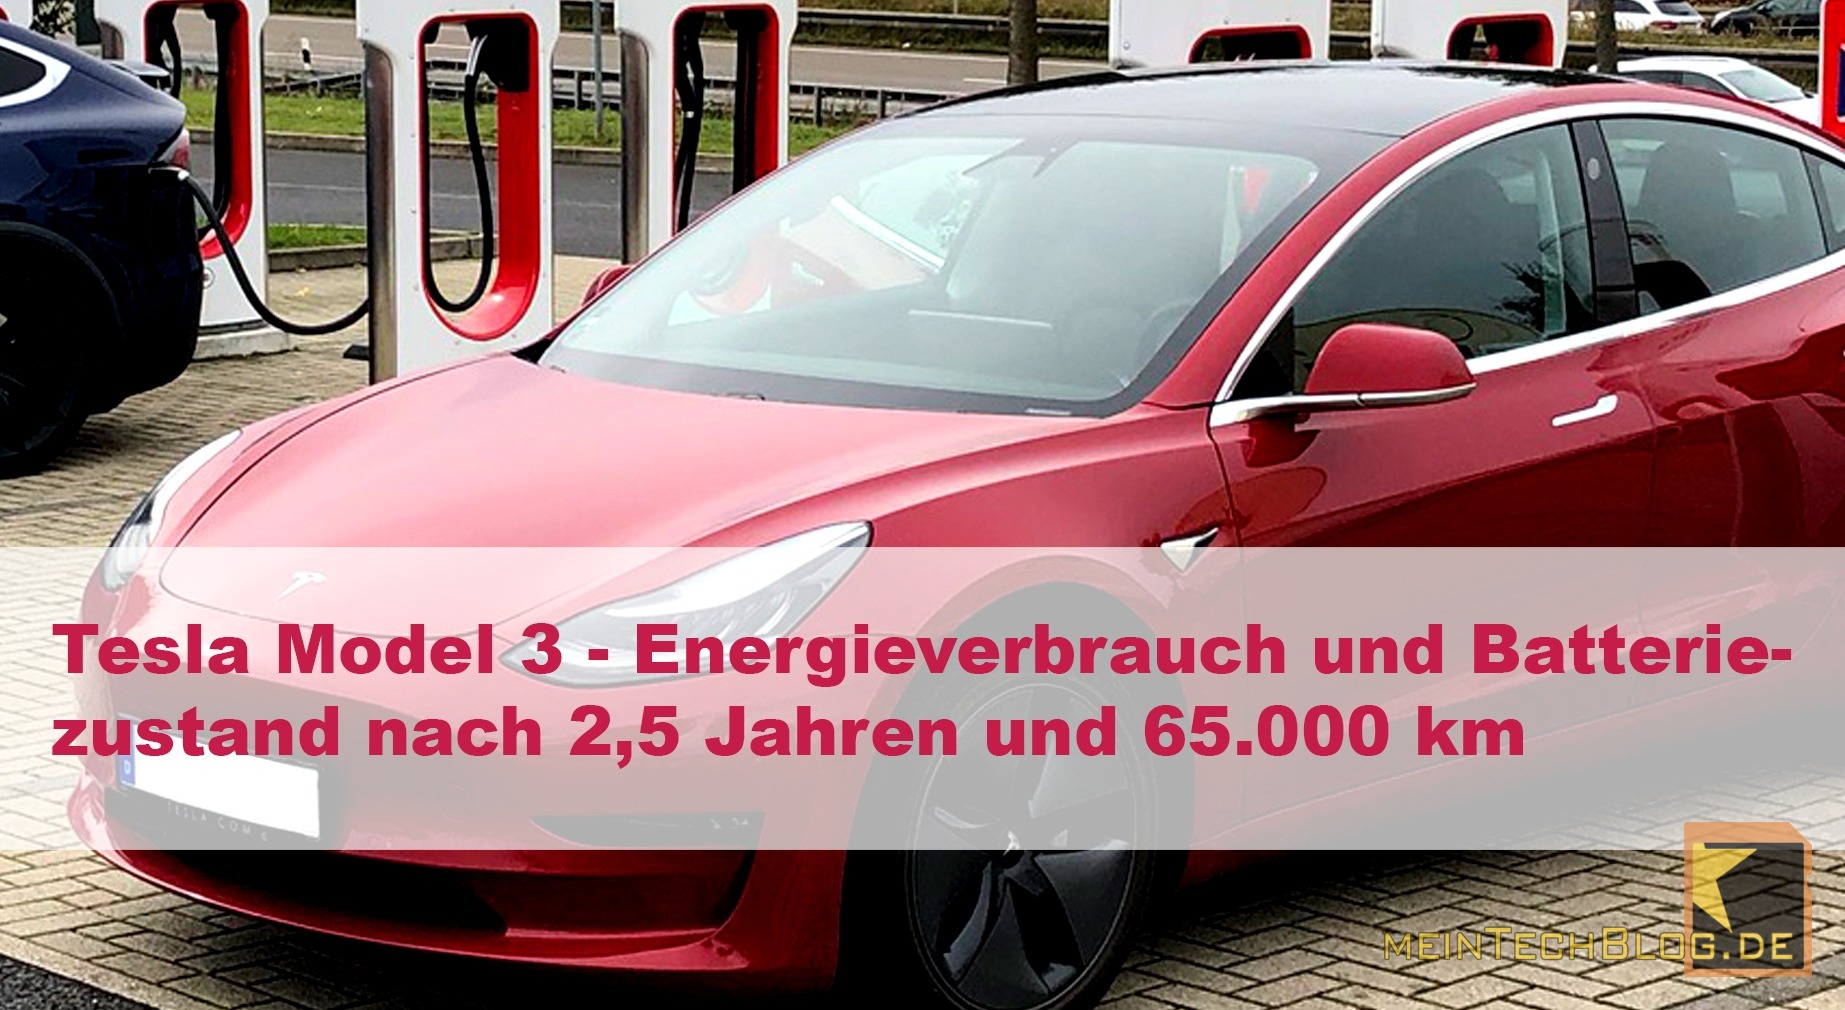 Tesla Model 3 - Energieverbrauch und Batteriezustand nach 2,5